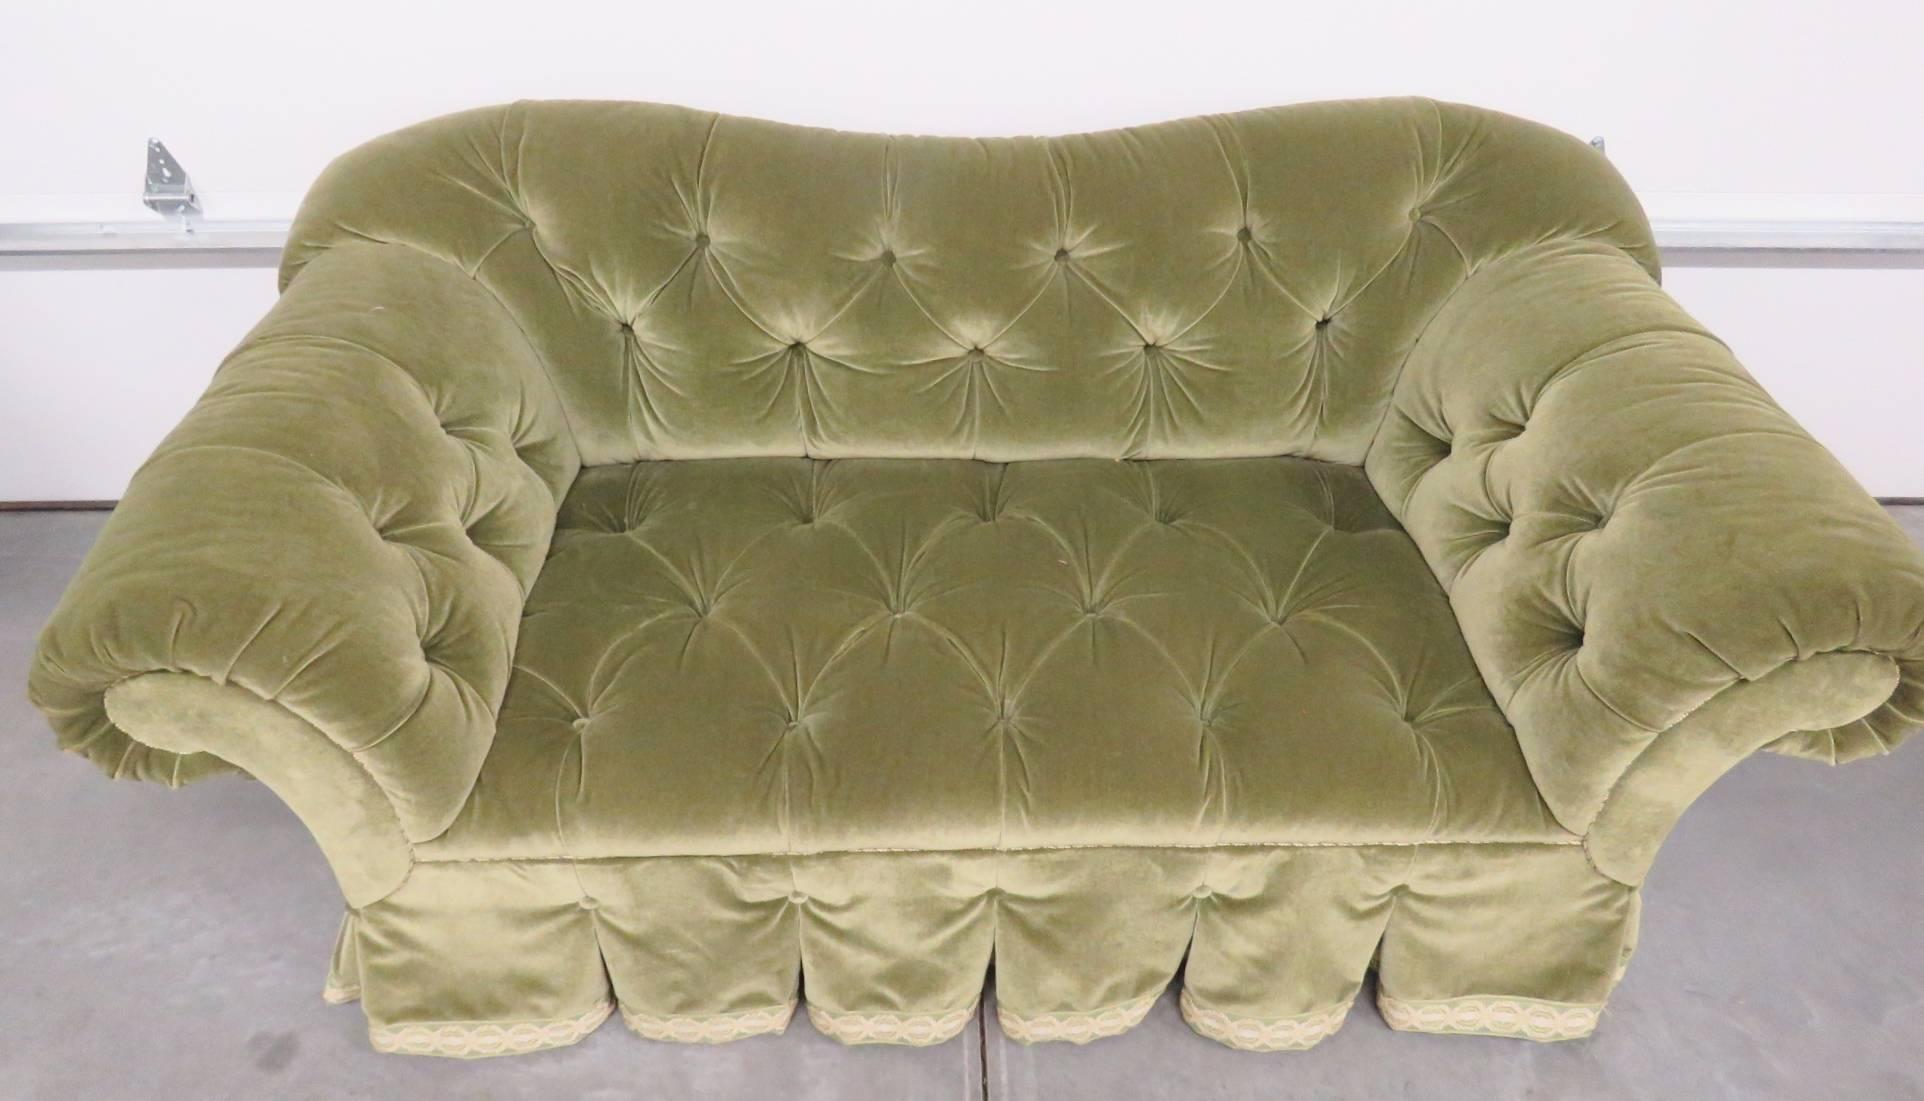 Green tufted velvet upholstery.